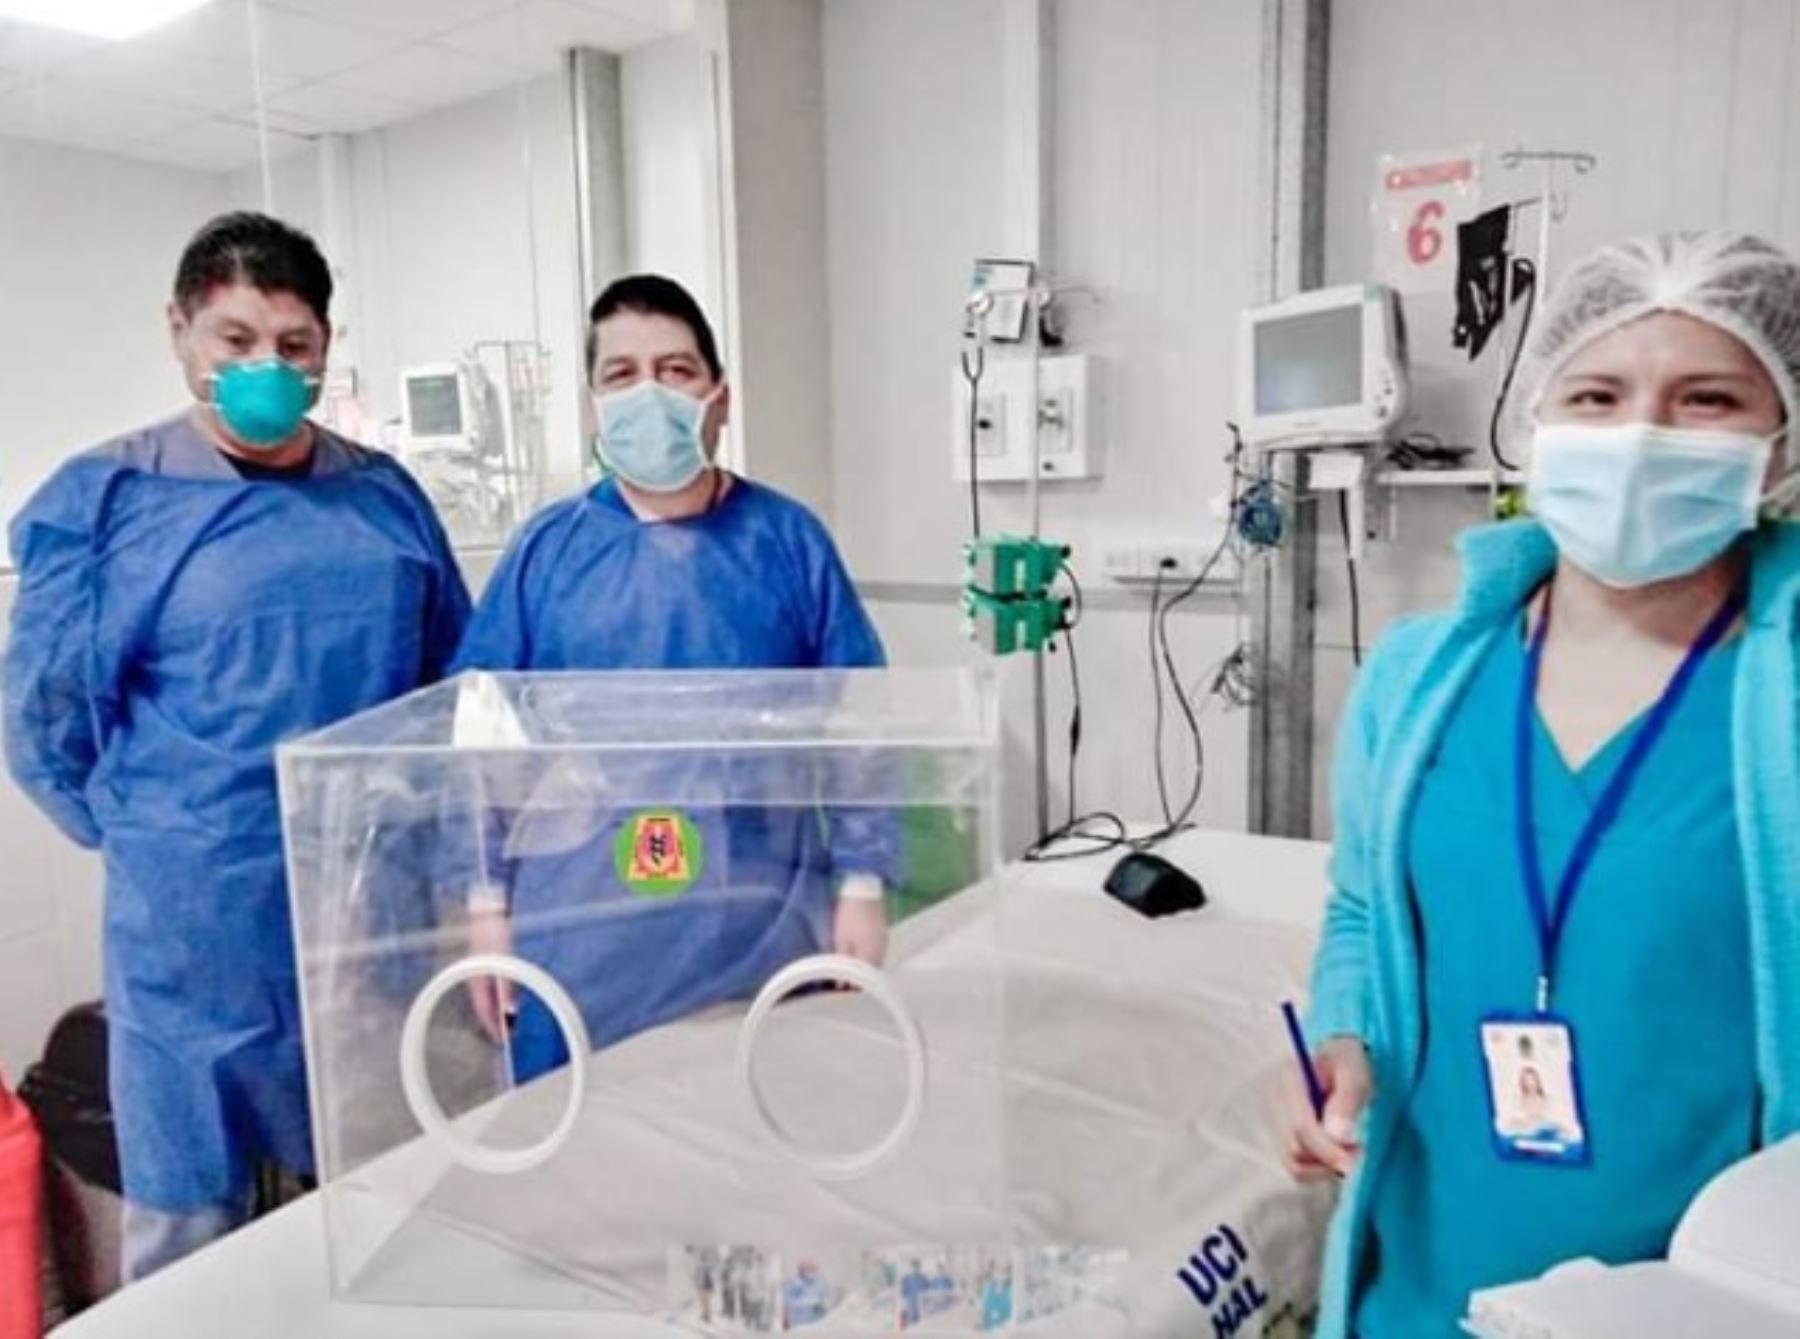 Médicos del hospital Antonio Lorena del Cusco crearon un prototipo de cámaras acrílicas para la hospitalización de pacientes críticos con covid-19 que requieran de intubación endotraqueal, en la unidad de cuidados intensivos, emergencia, traumashock y centro quirúrgico.